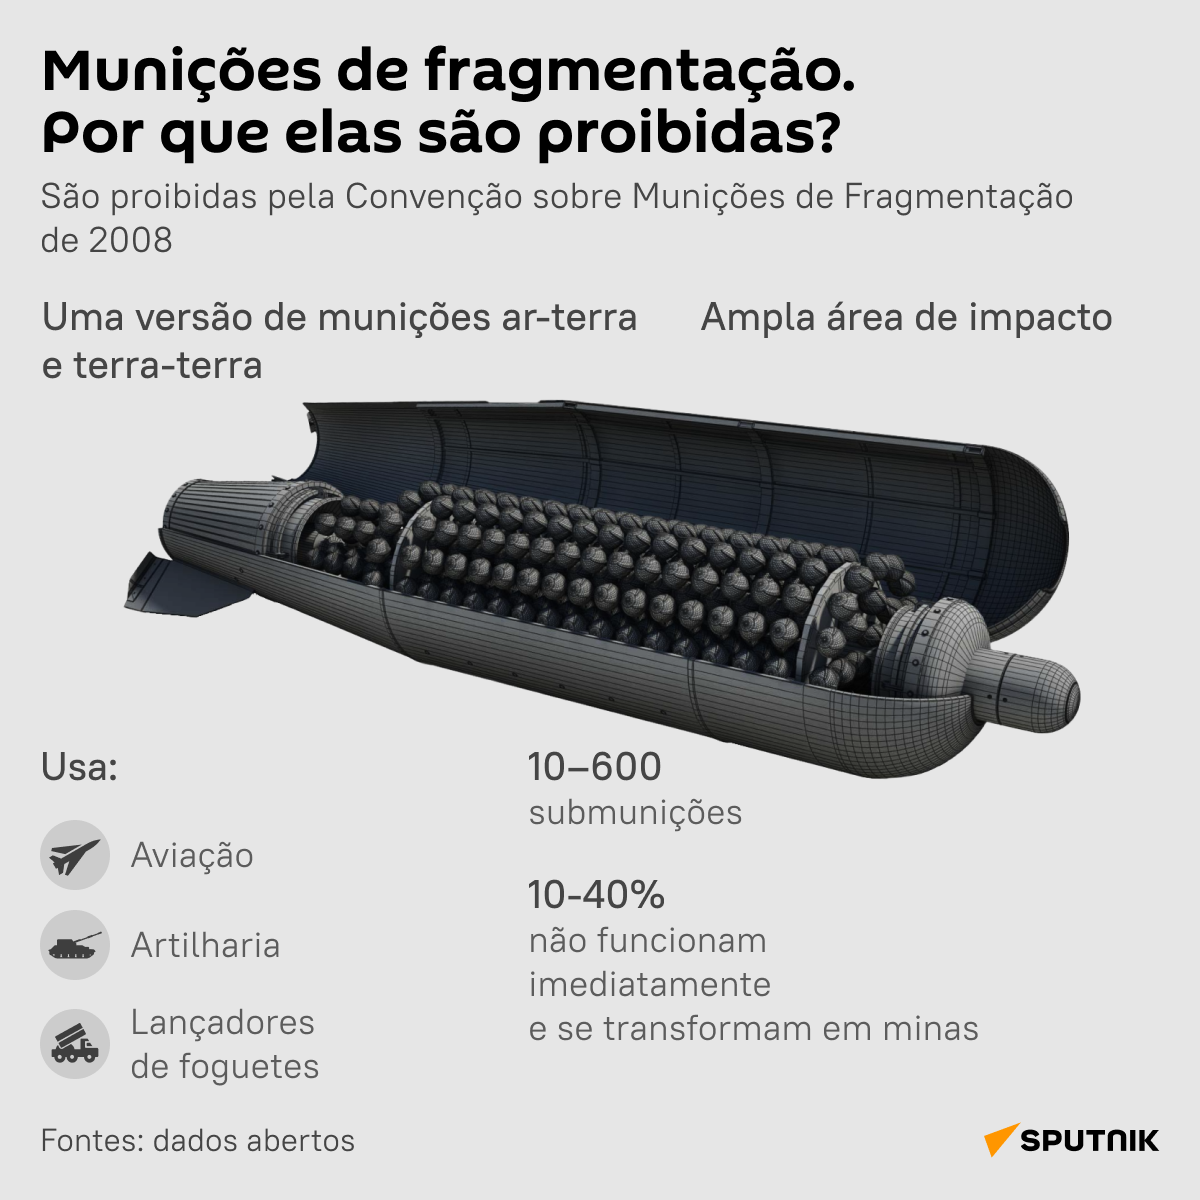 Munições de fragmentação: por que elas são proibidas? - Sputnik Brasil